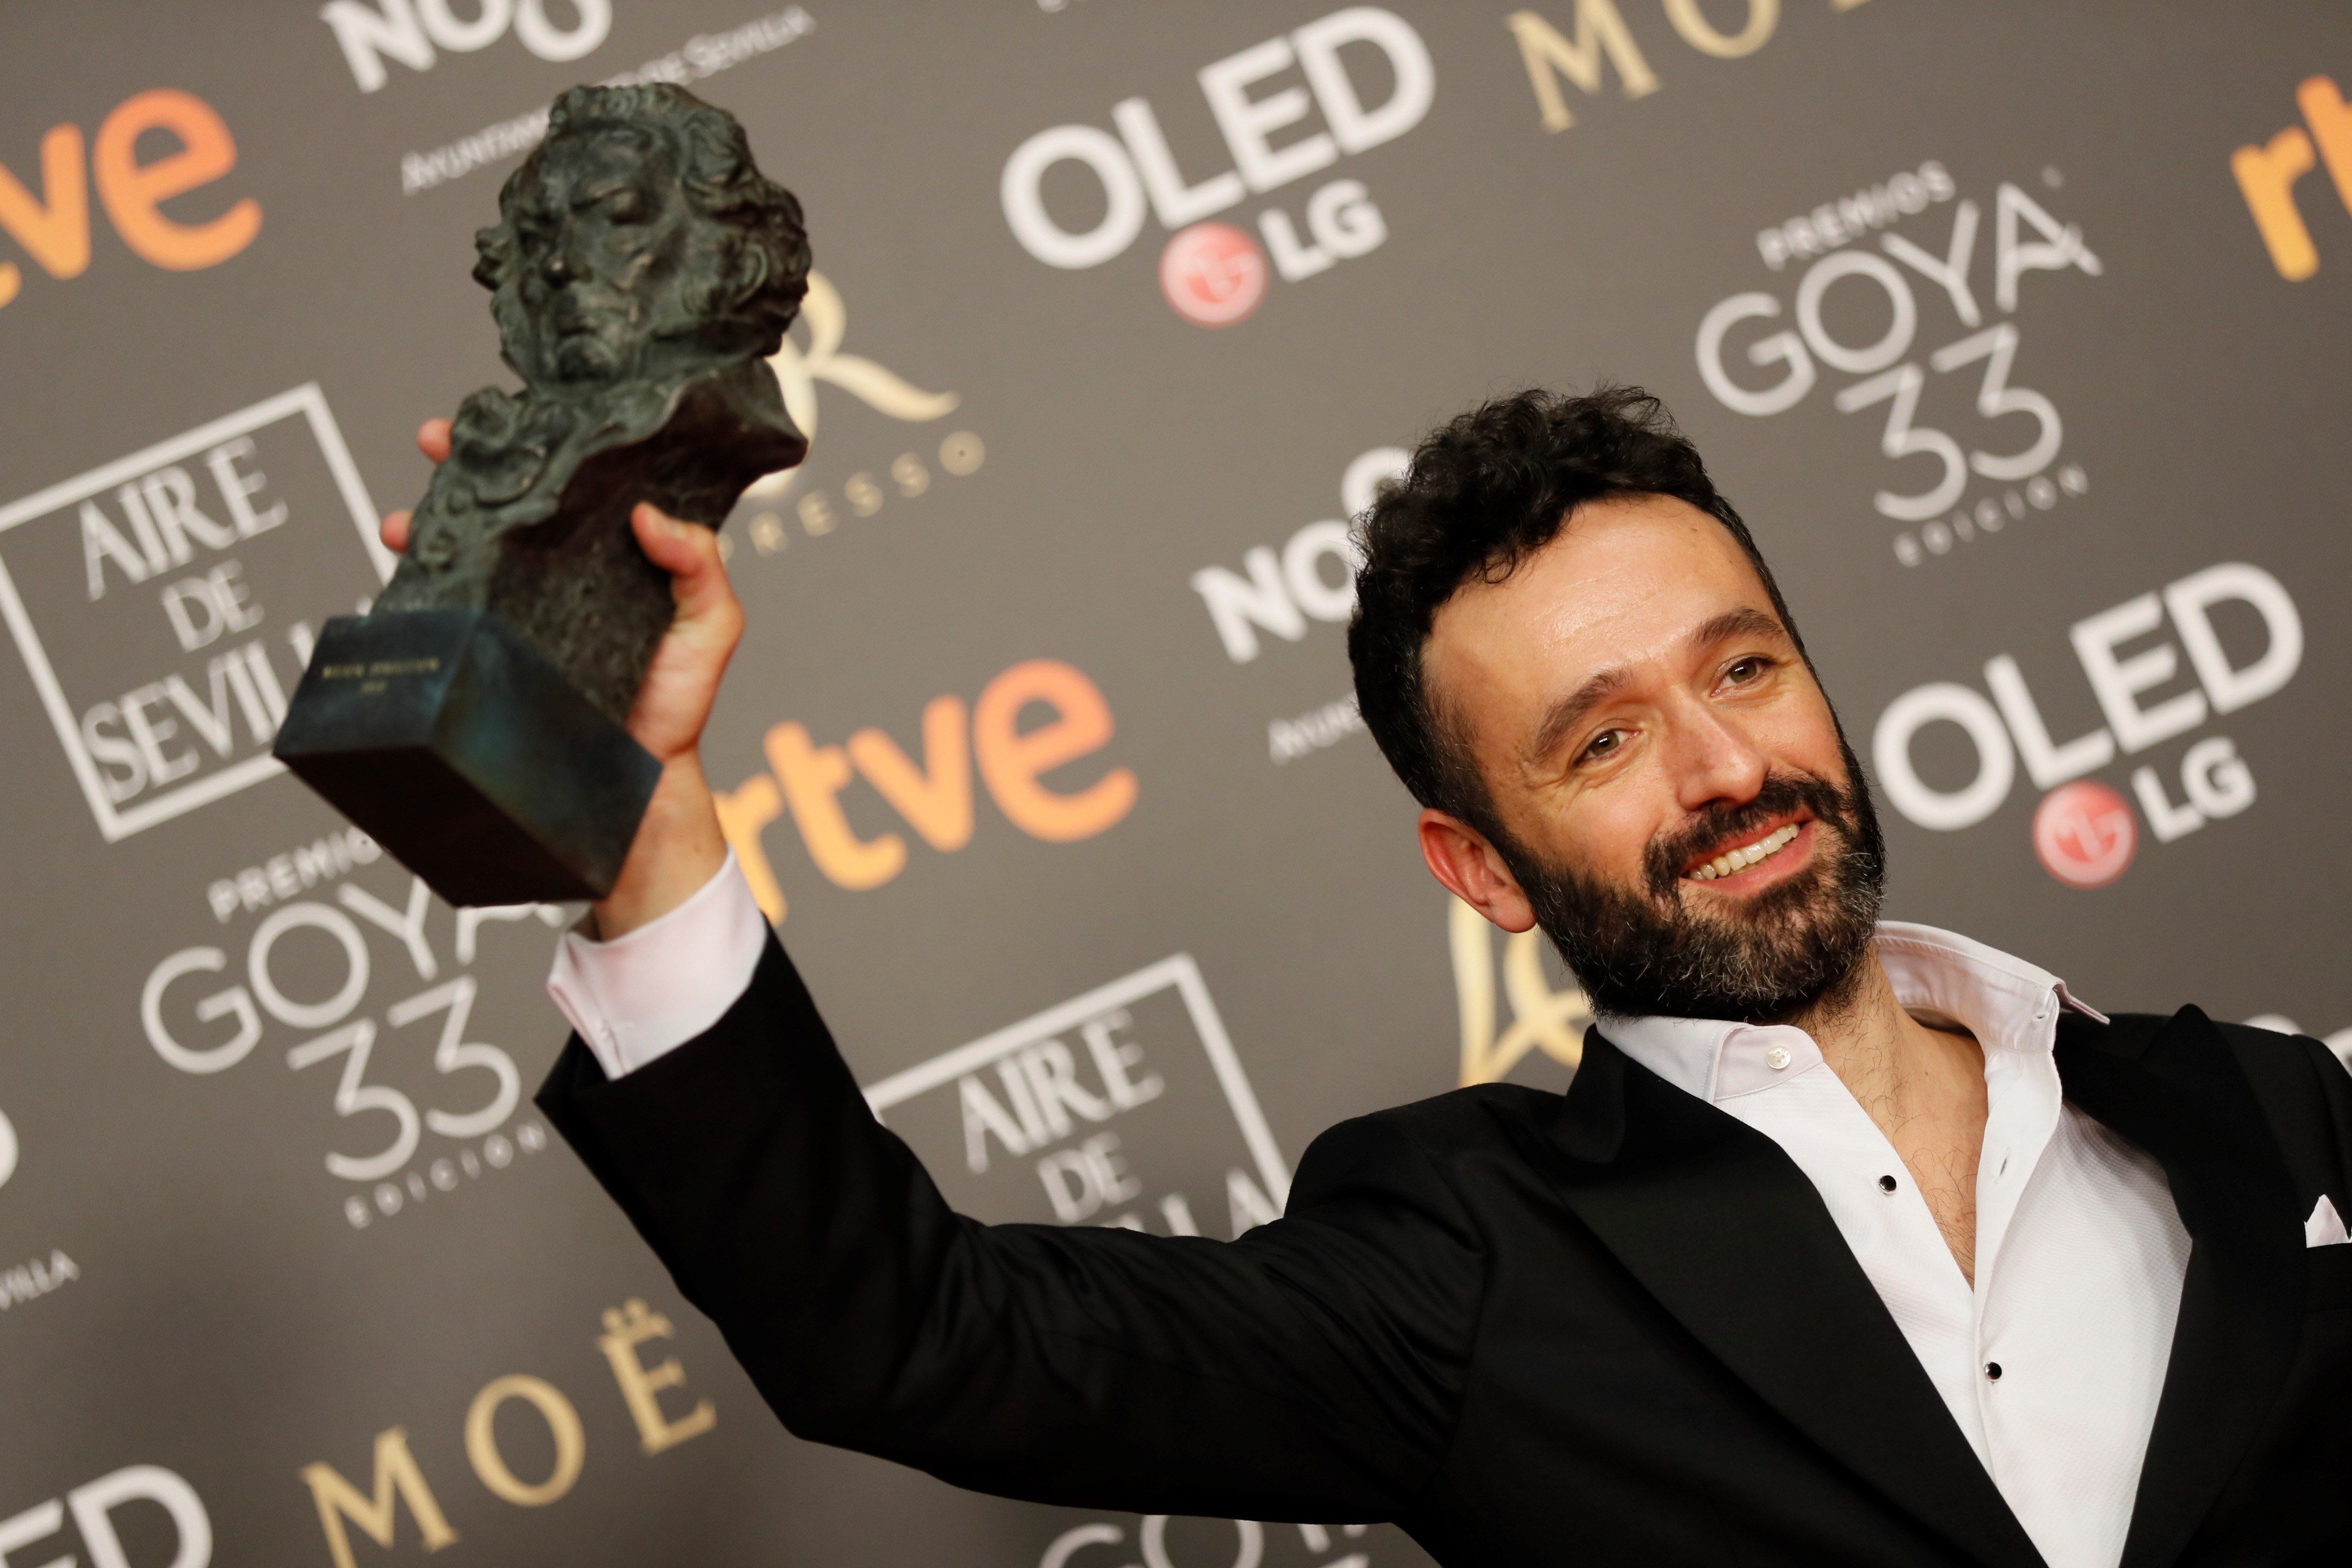 El director Rodrigo Sorogoyen alza el Goya a mejor dirección, por su película "El Reino". (Foto Prensa Libre: EFE)